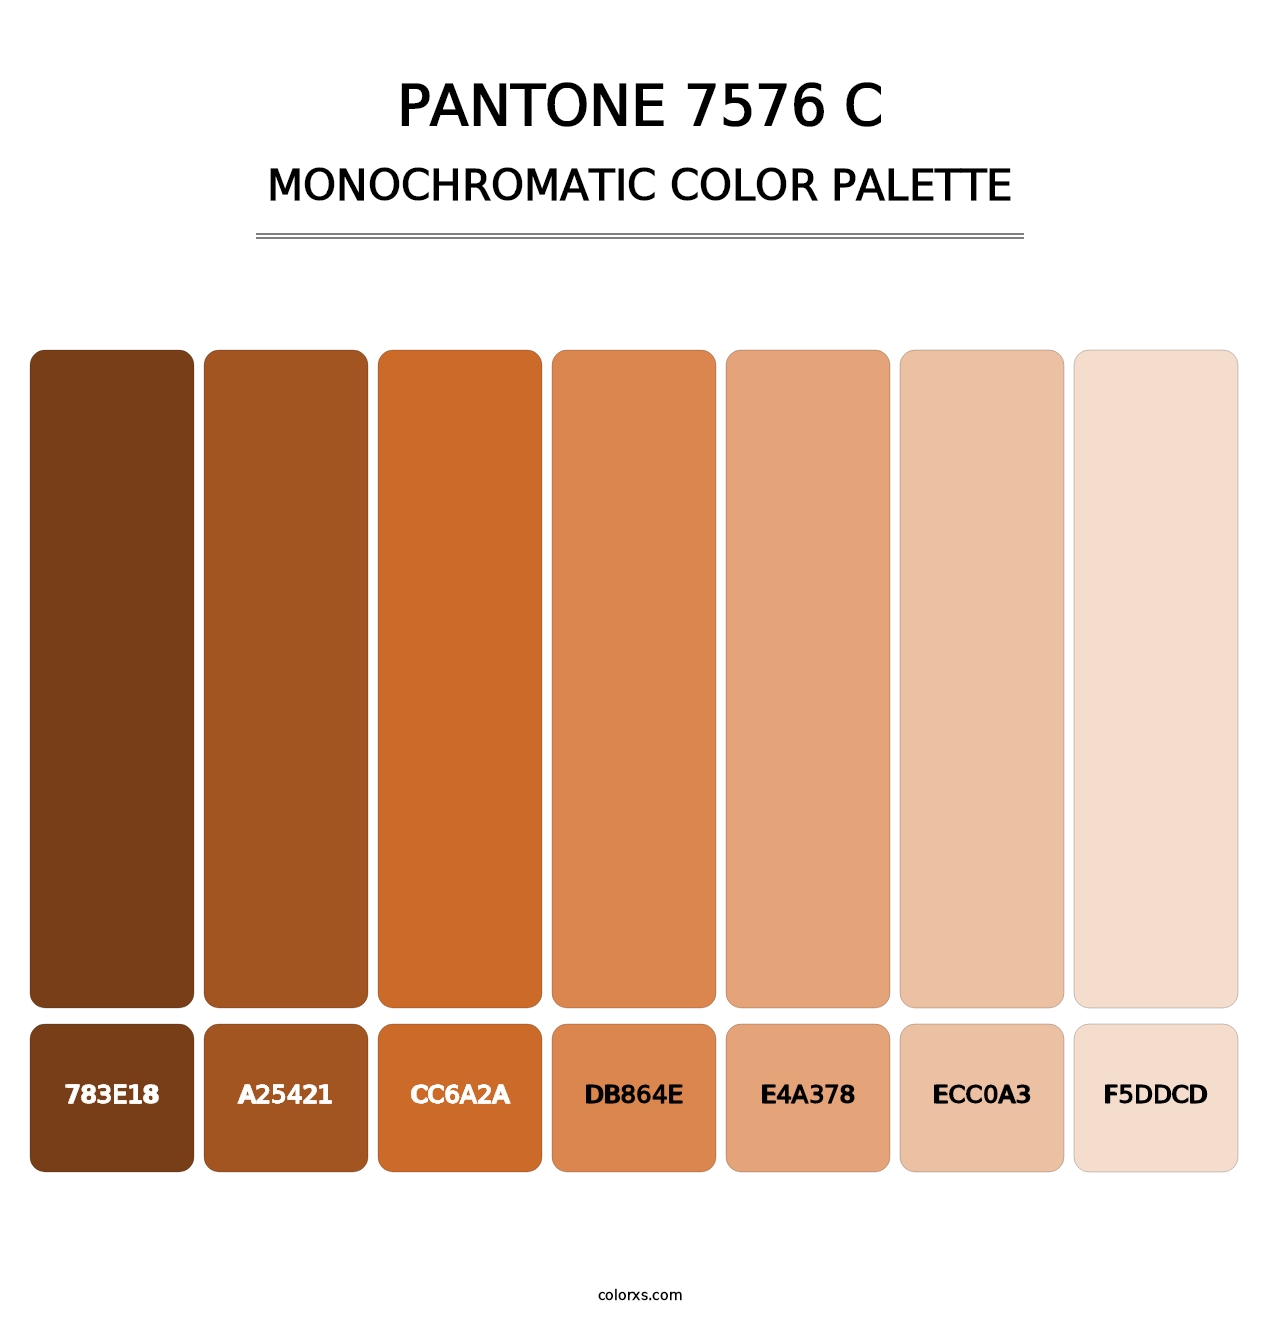 PANTONE 7576 C - Monochromatic Color Palette